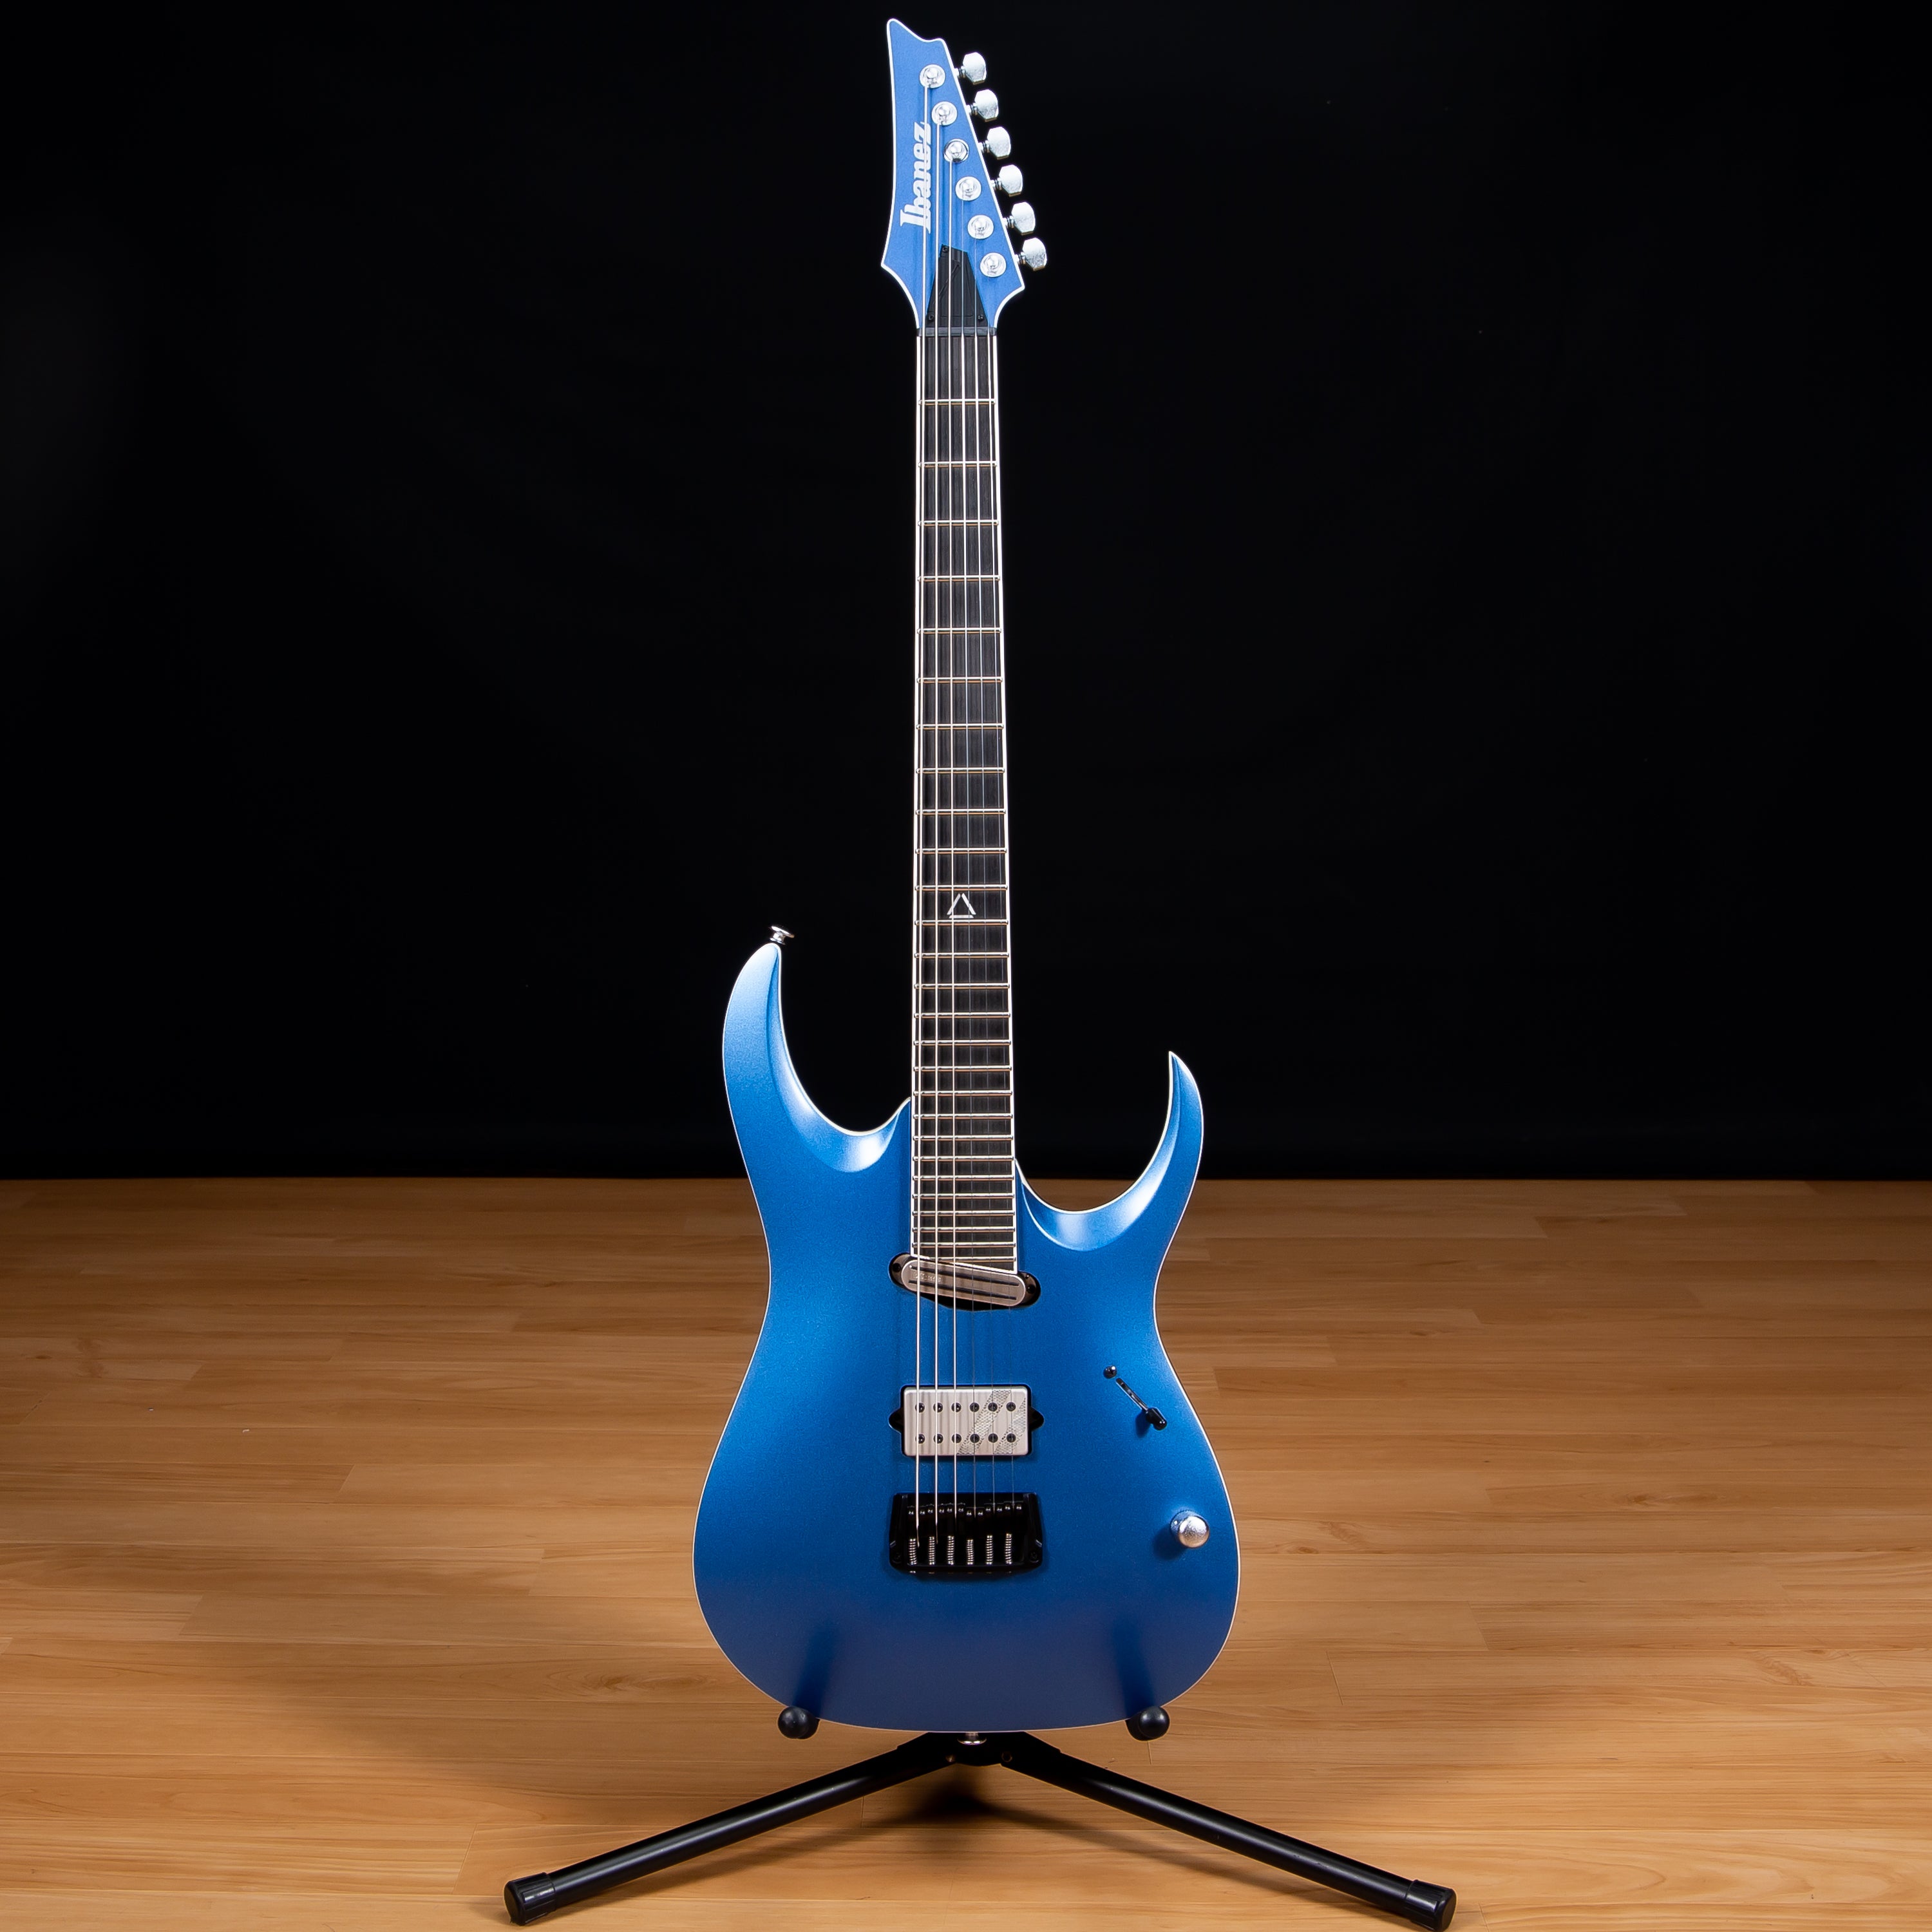 IBANEZ JBM9999 Jake Bowen Signature Electric Guitar - Azure Metallic Matte view 2